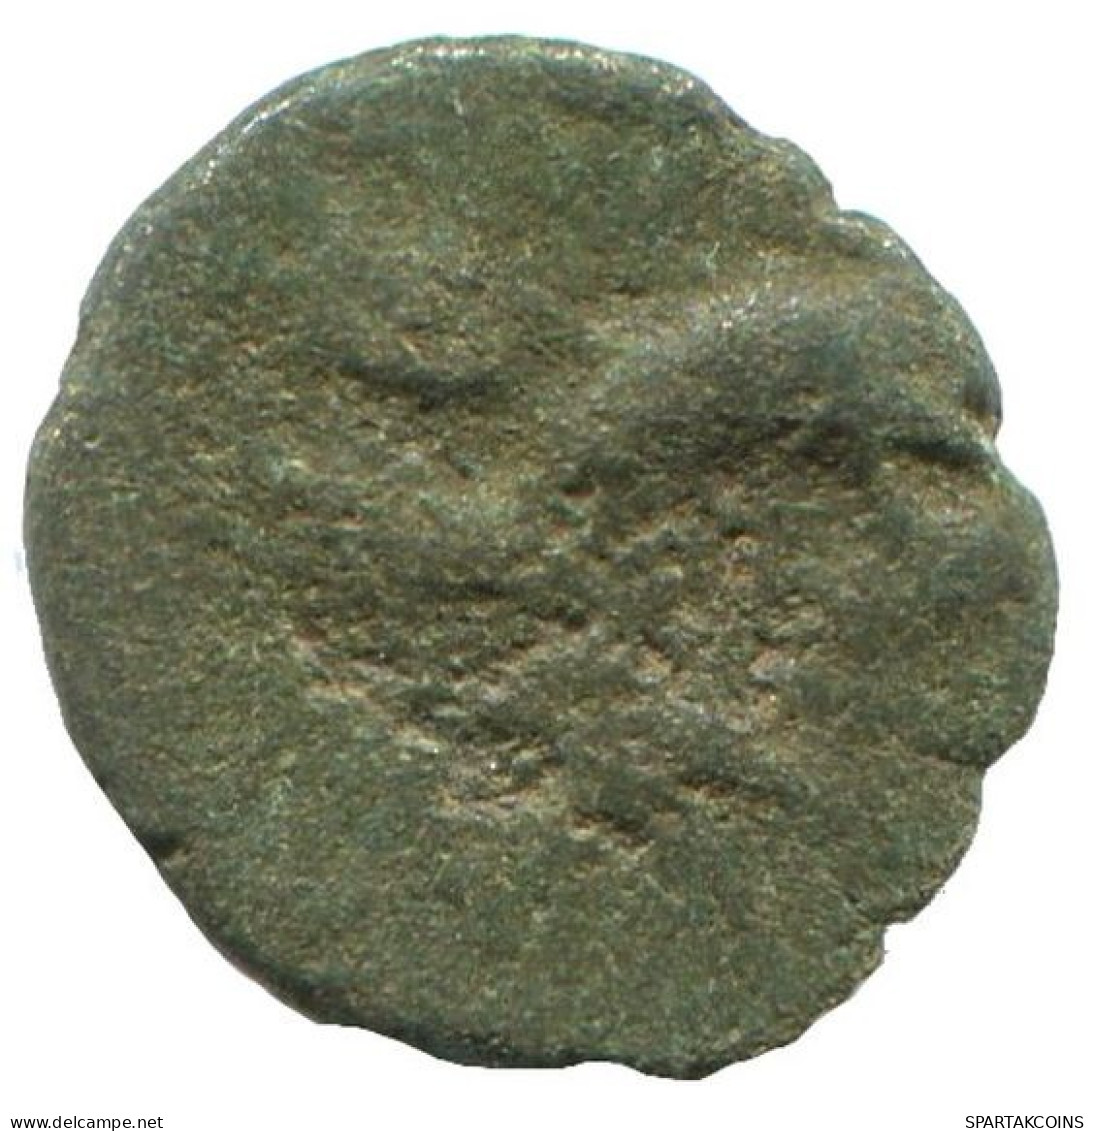 Antike Authentische Original GRIECHISCHE Münze 0.5g/10mm #NNN1265.9.D.A - Griechische Münzen